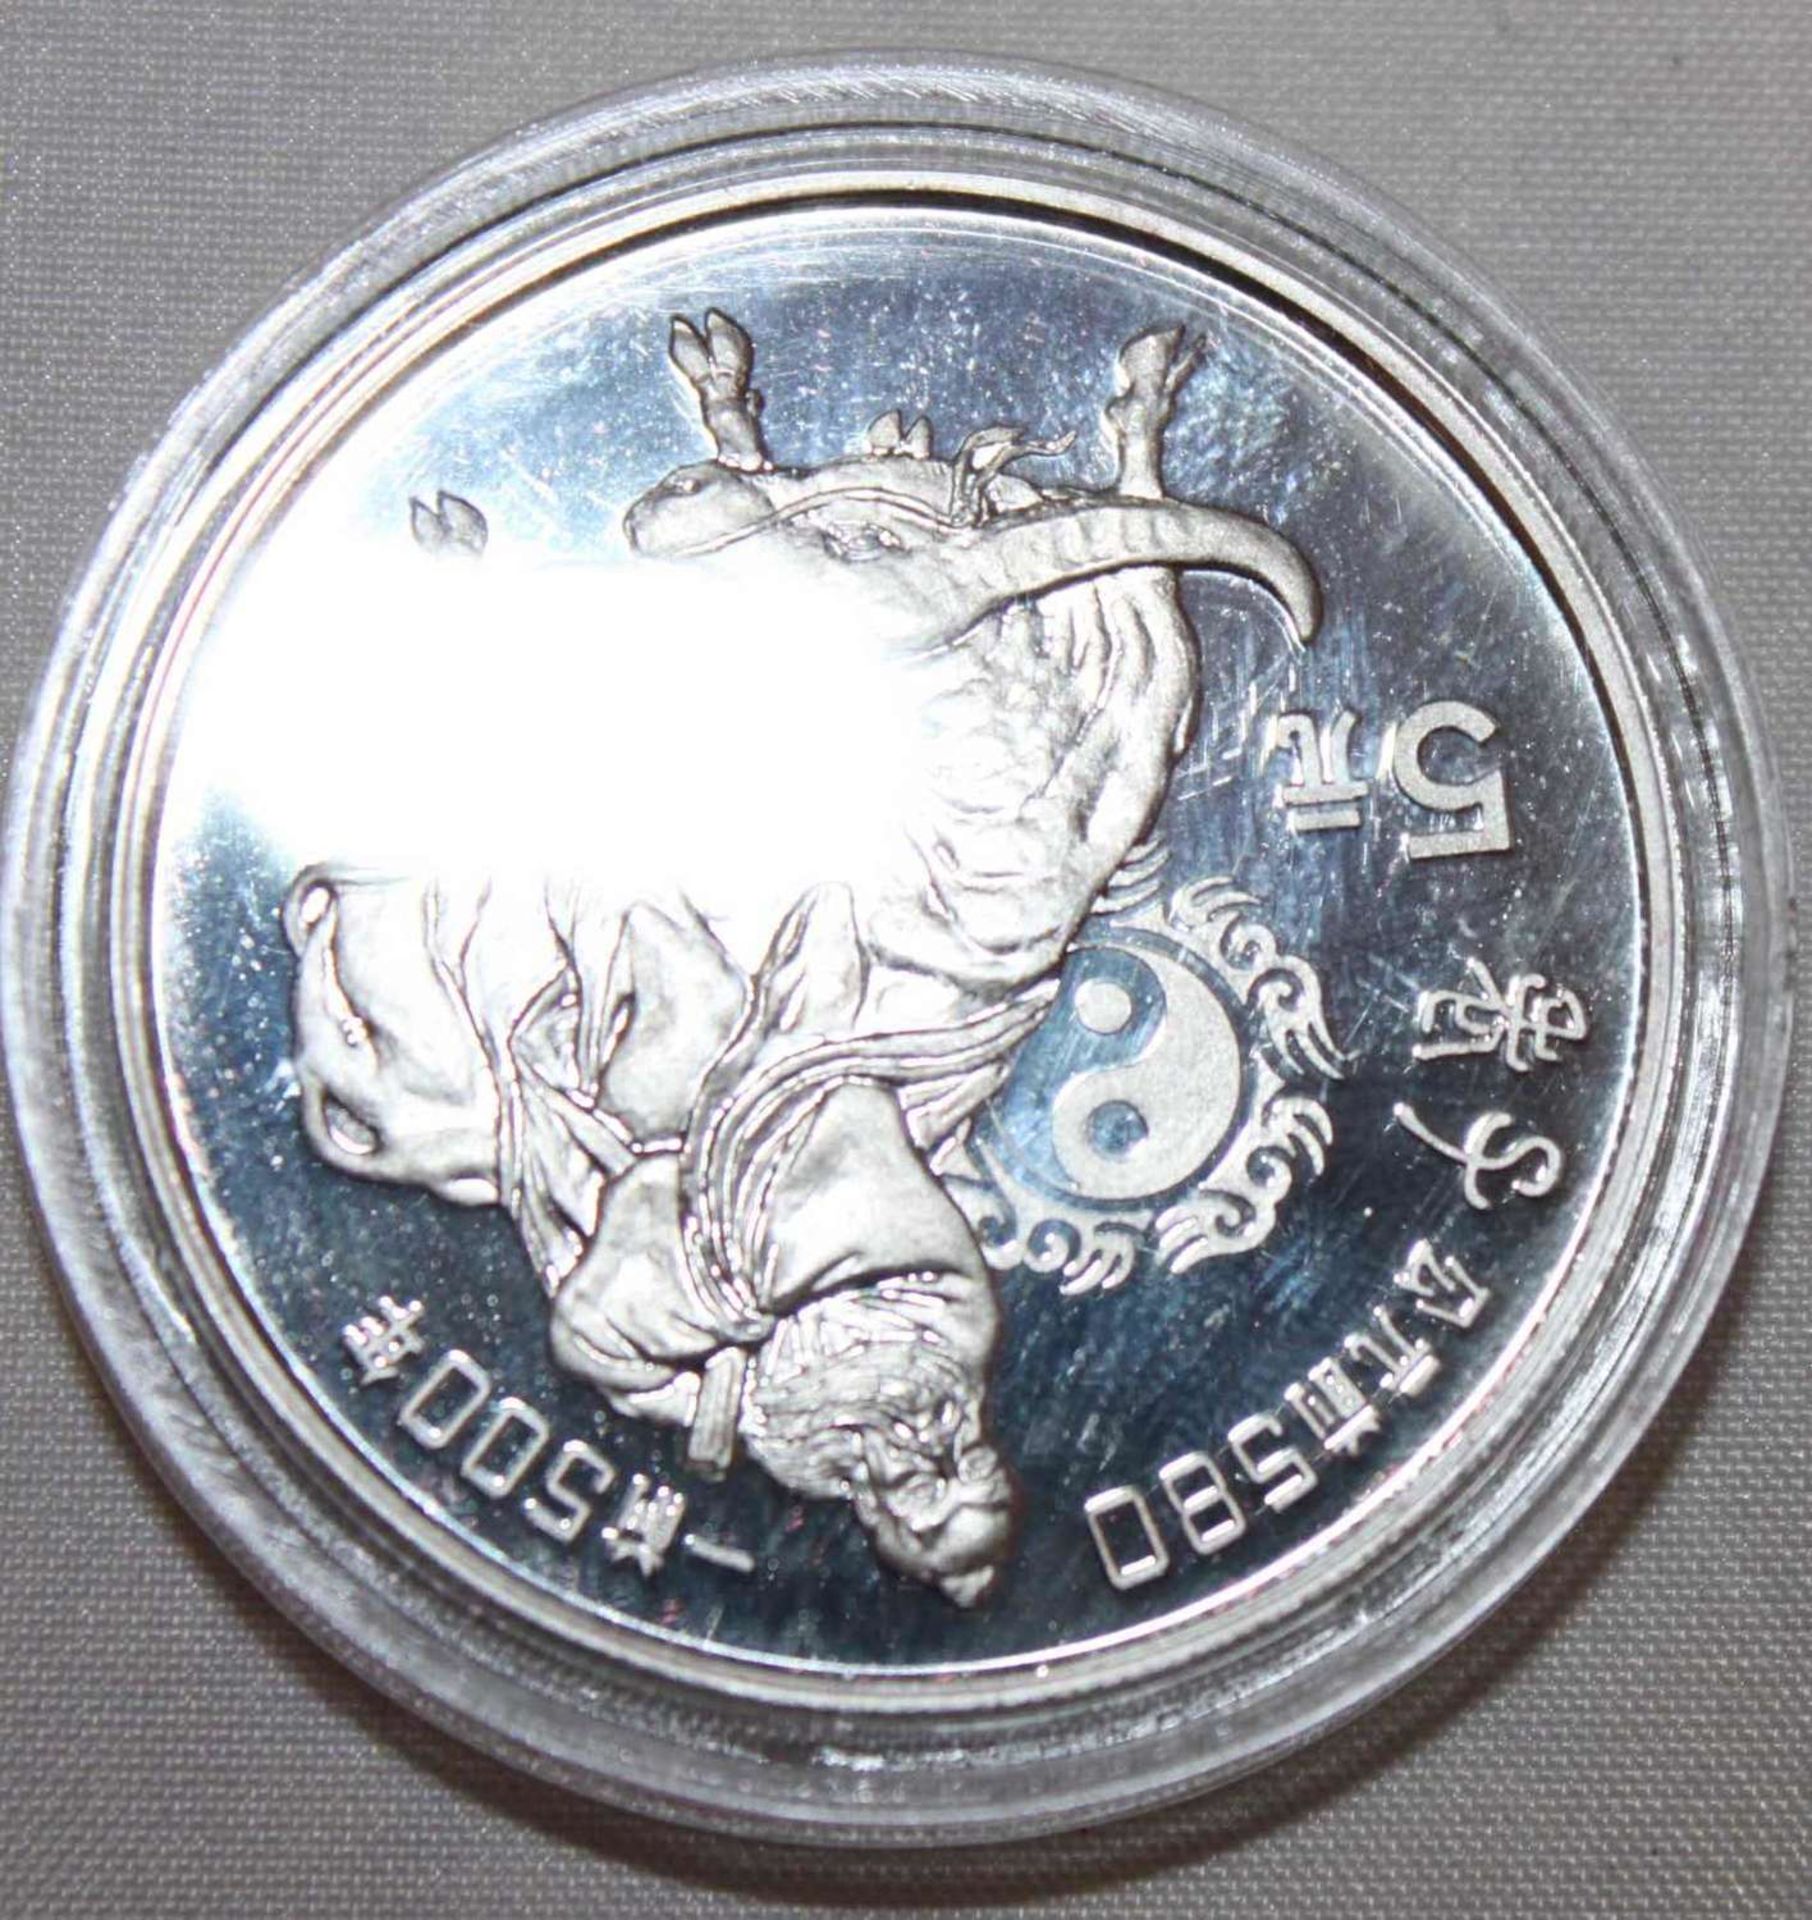 China 1985, 5 Yuan - Silbermünze "Lao - Tse". Silber 900. Gewicht: 22,2 gr.. In Kapsel. Erhaltung: